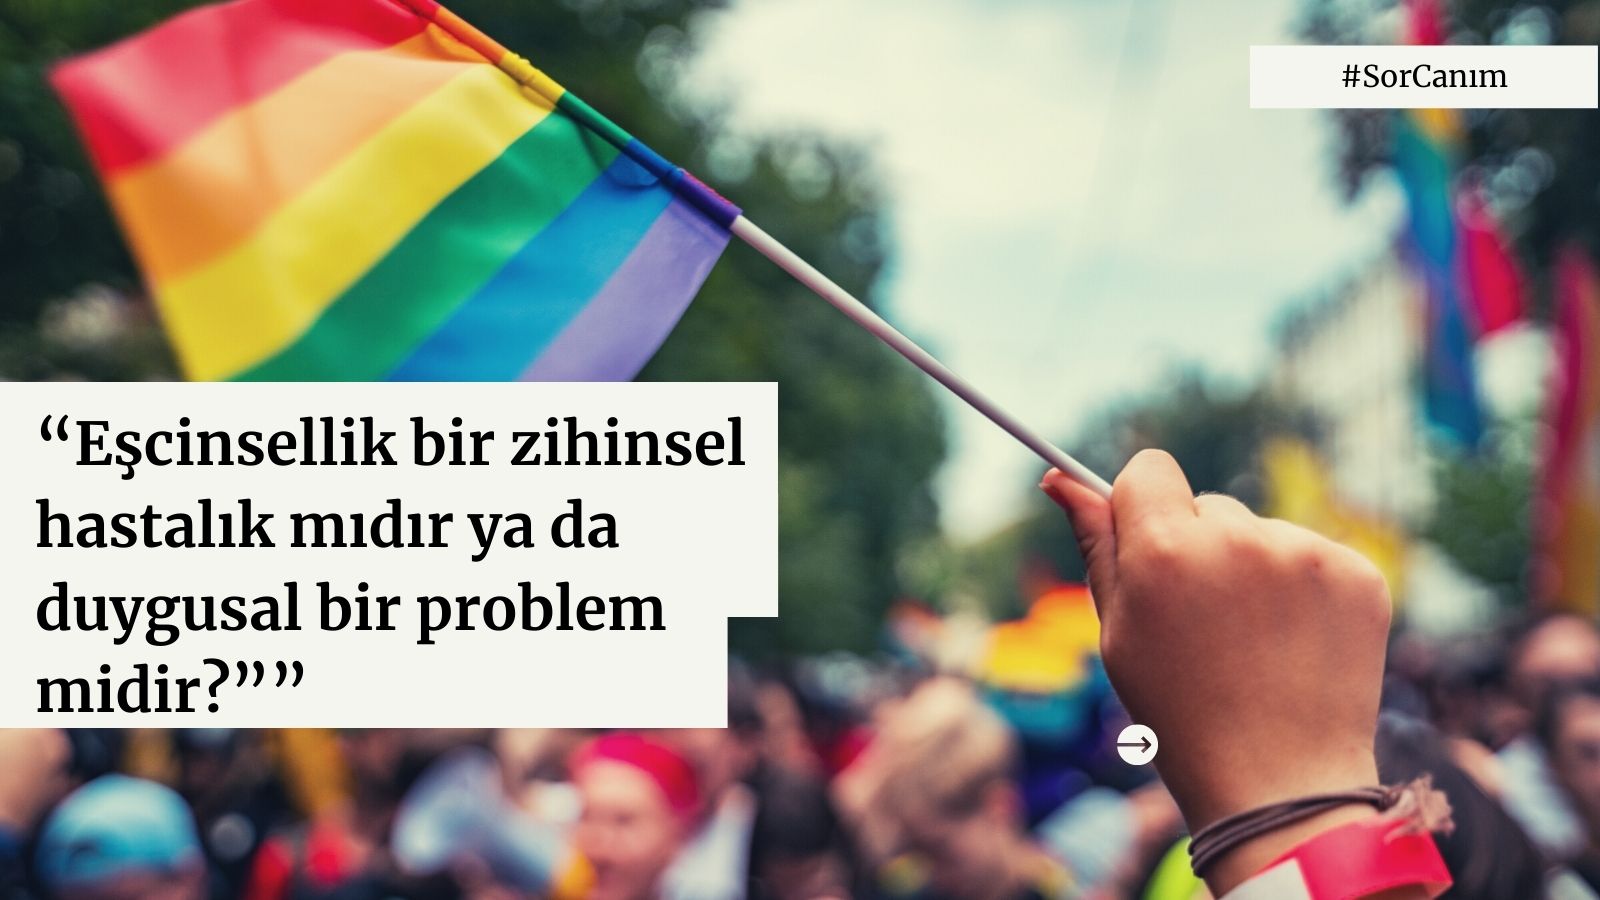 Sor Canım: “Eşcinsellik bir zihinsel hastalık mıdır ya da duygusal bir problem midir?” Kaos GL - LGBTİ+ Haber Portalı